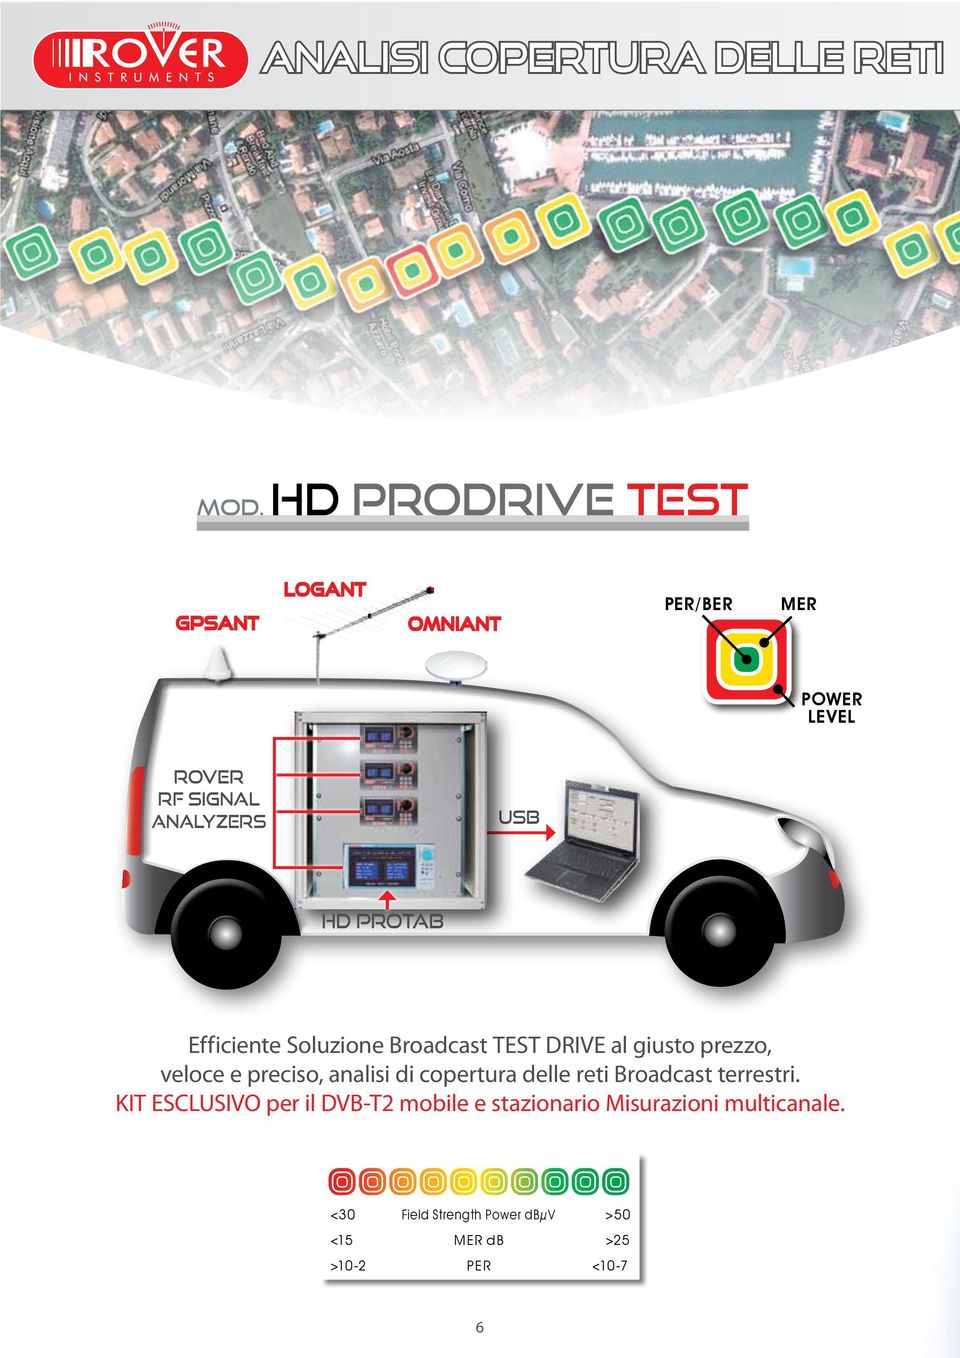 PROTAB Efficiente Soluzione Broadcast TEST DRIVE al giusto prezzo, veloce e preciso, analisi di